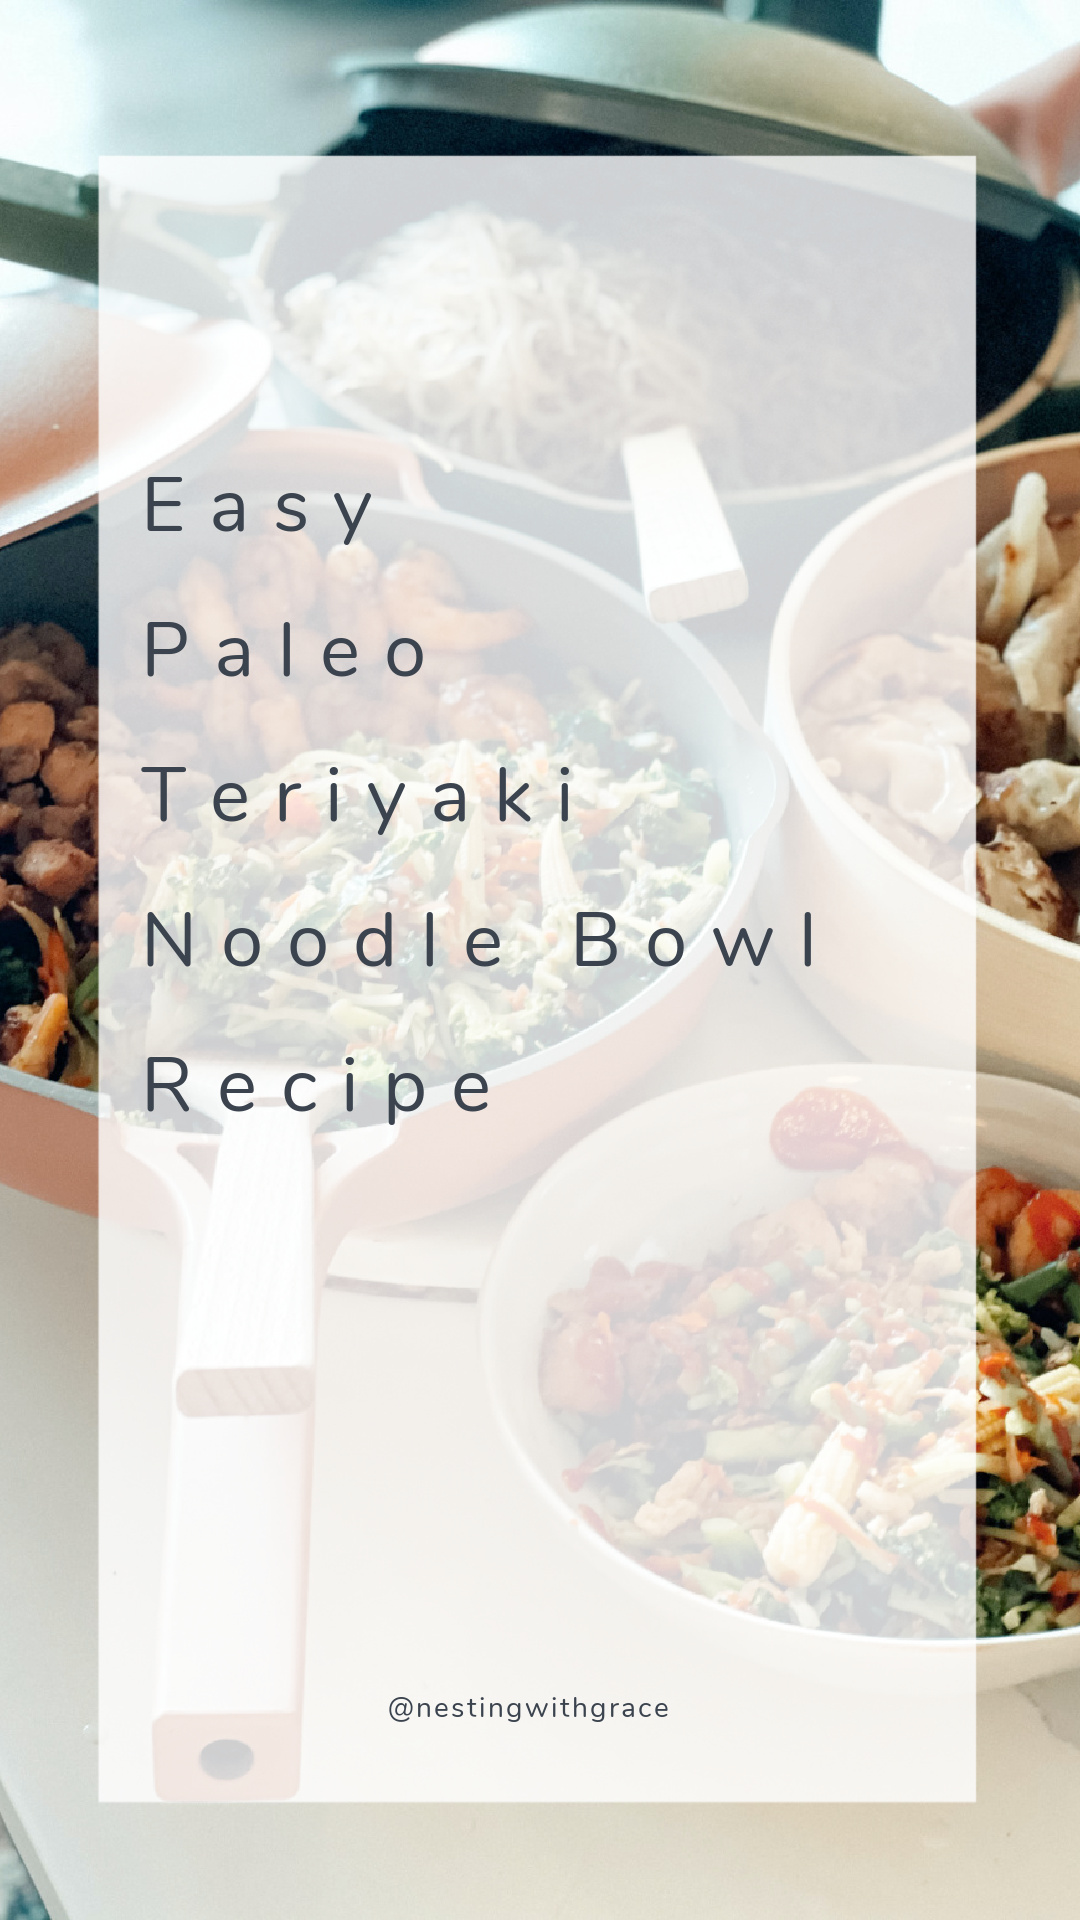 Easy Paleo Teriyaki Noodle Bowl Recipe